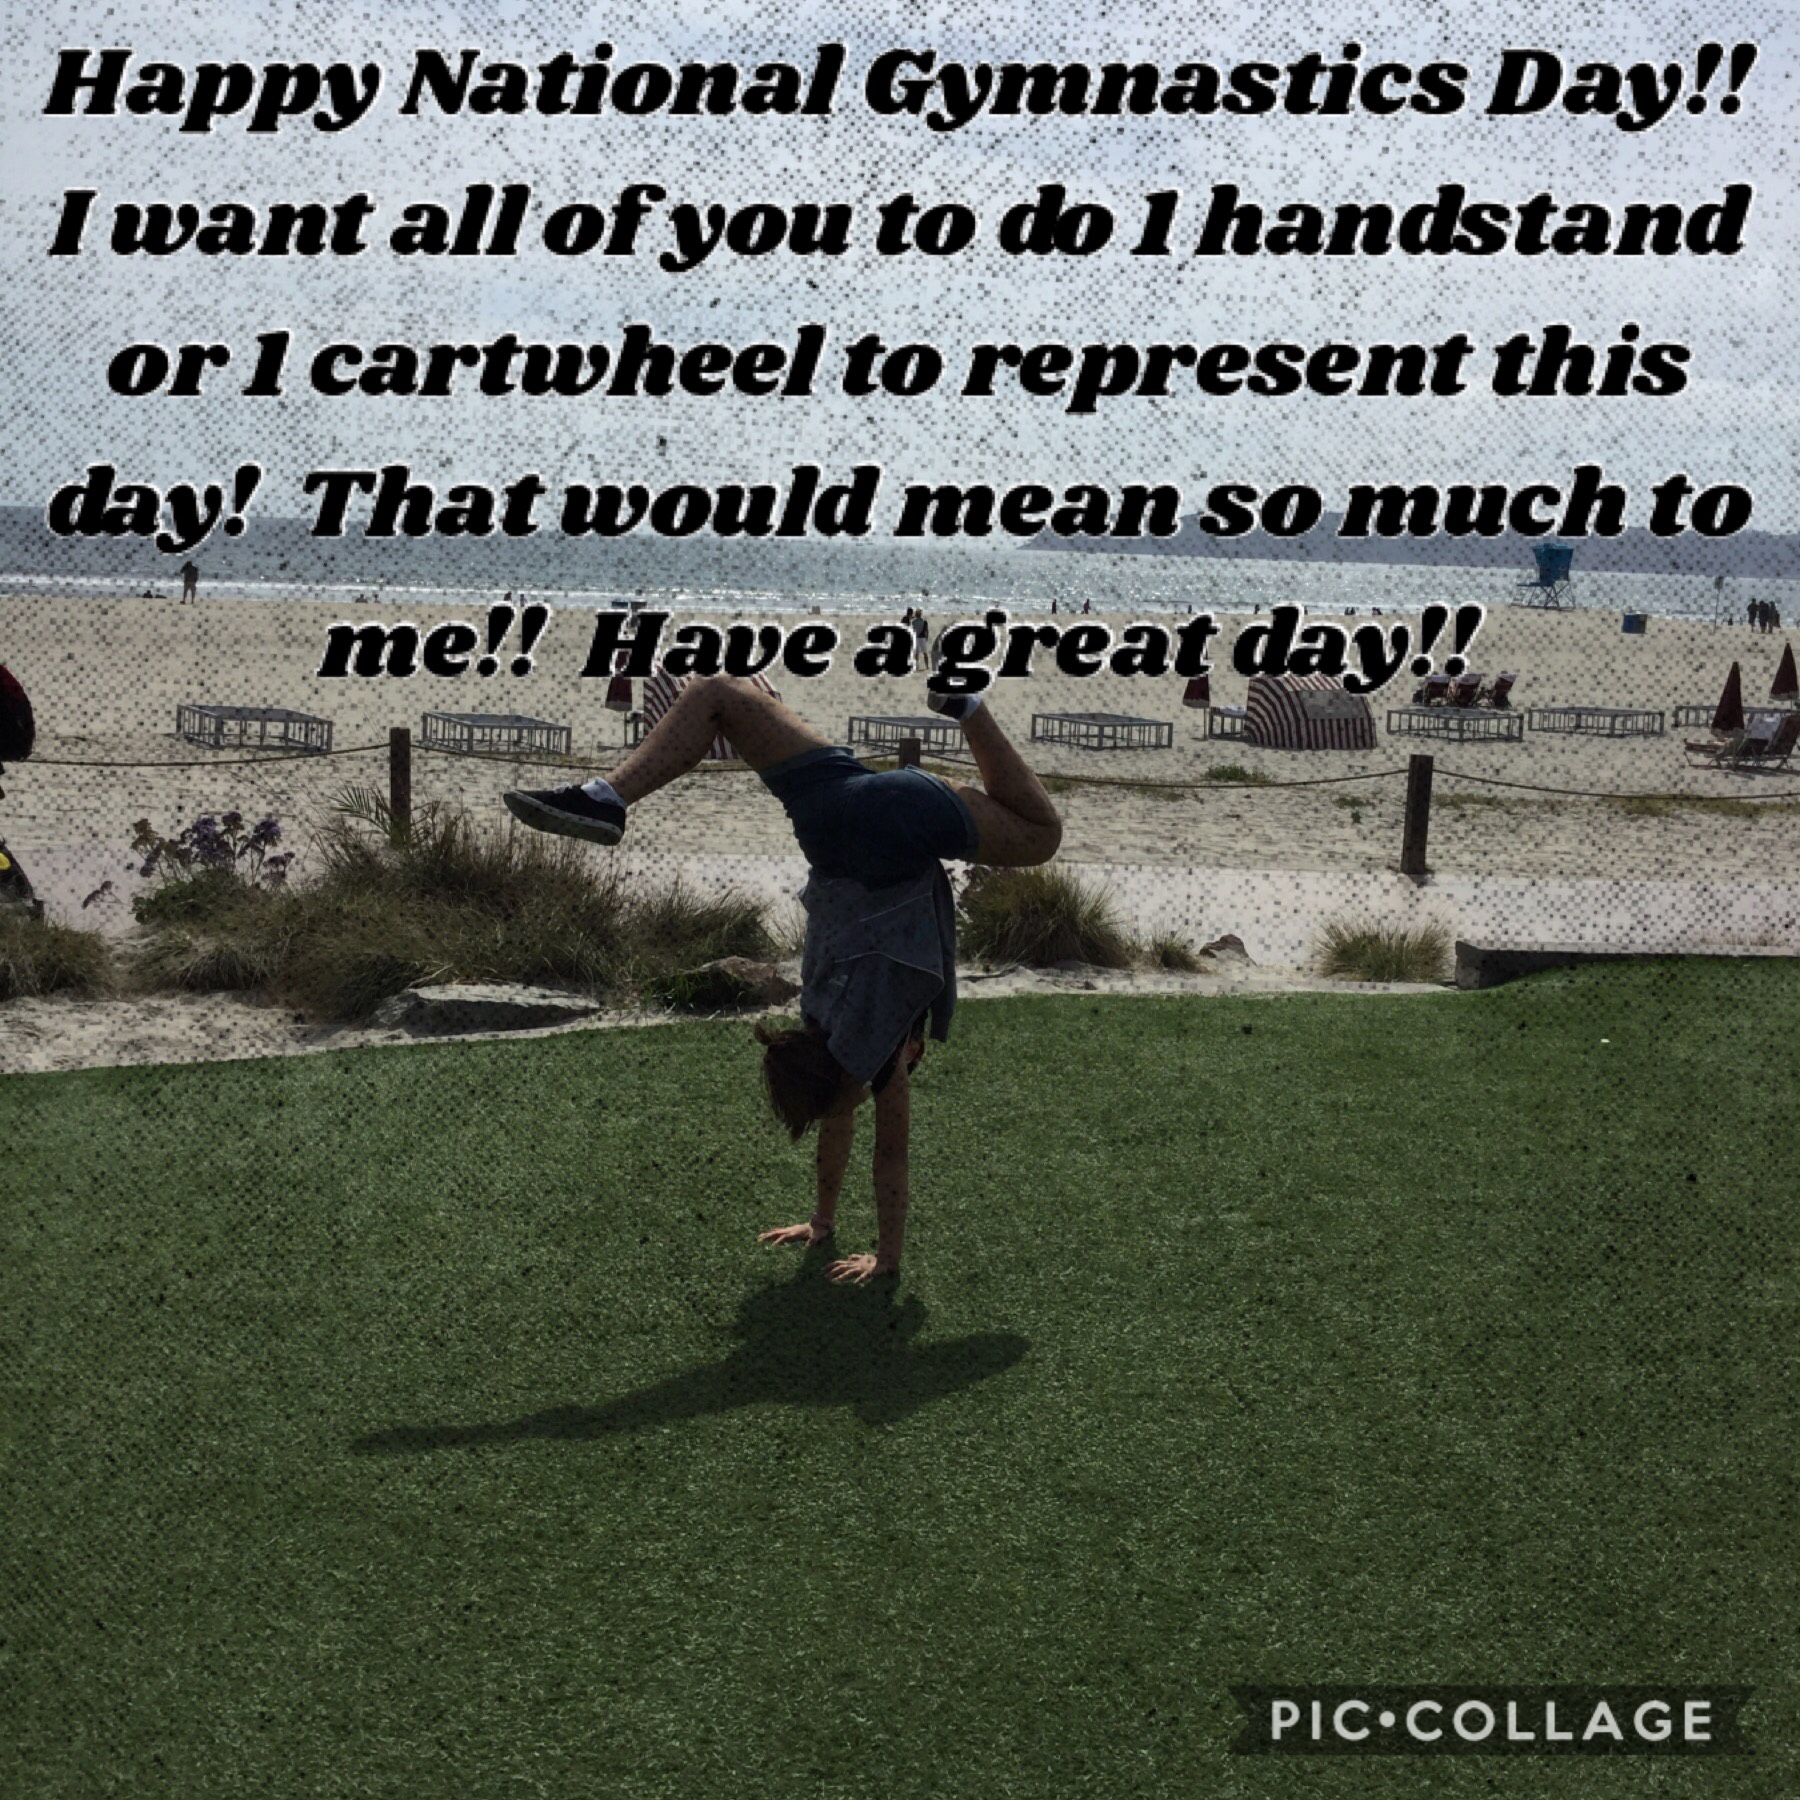 Happy National Gymnastics Day!!